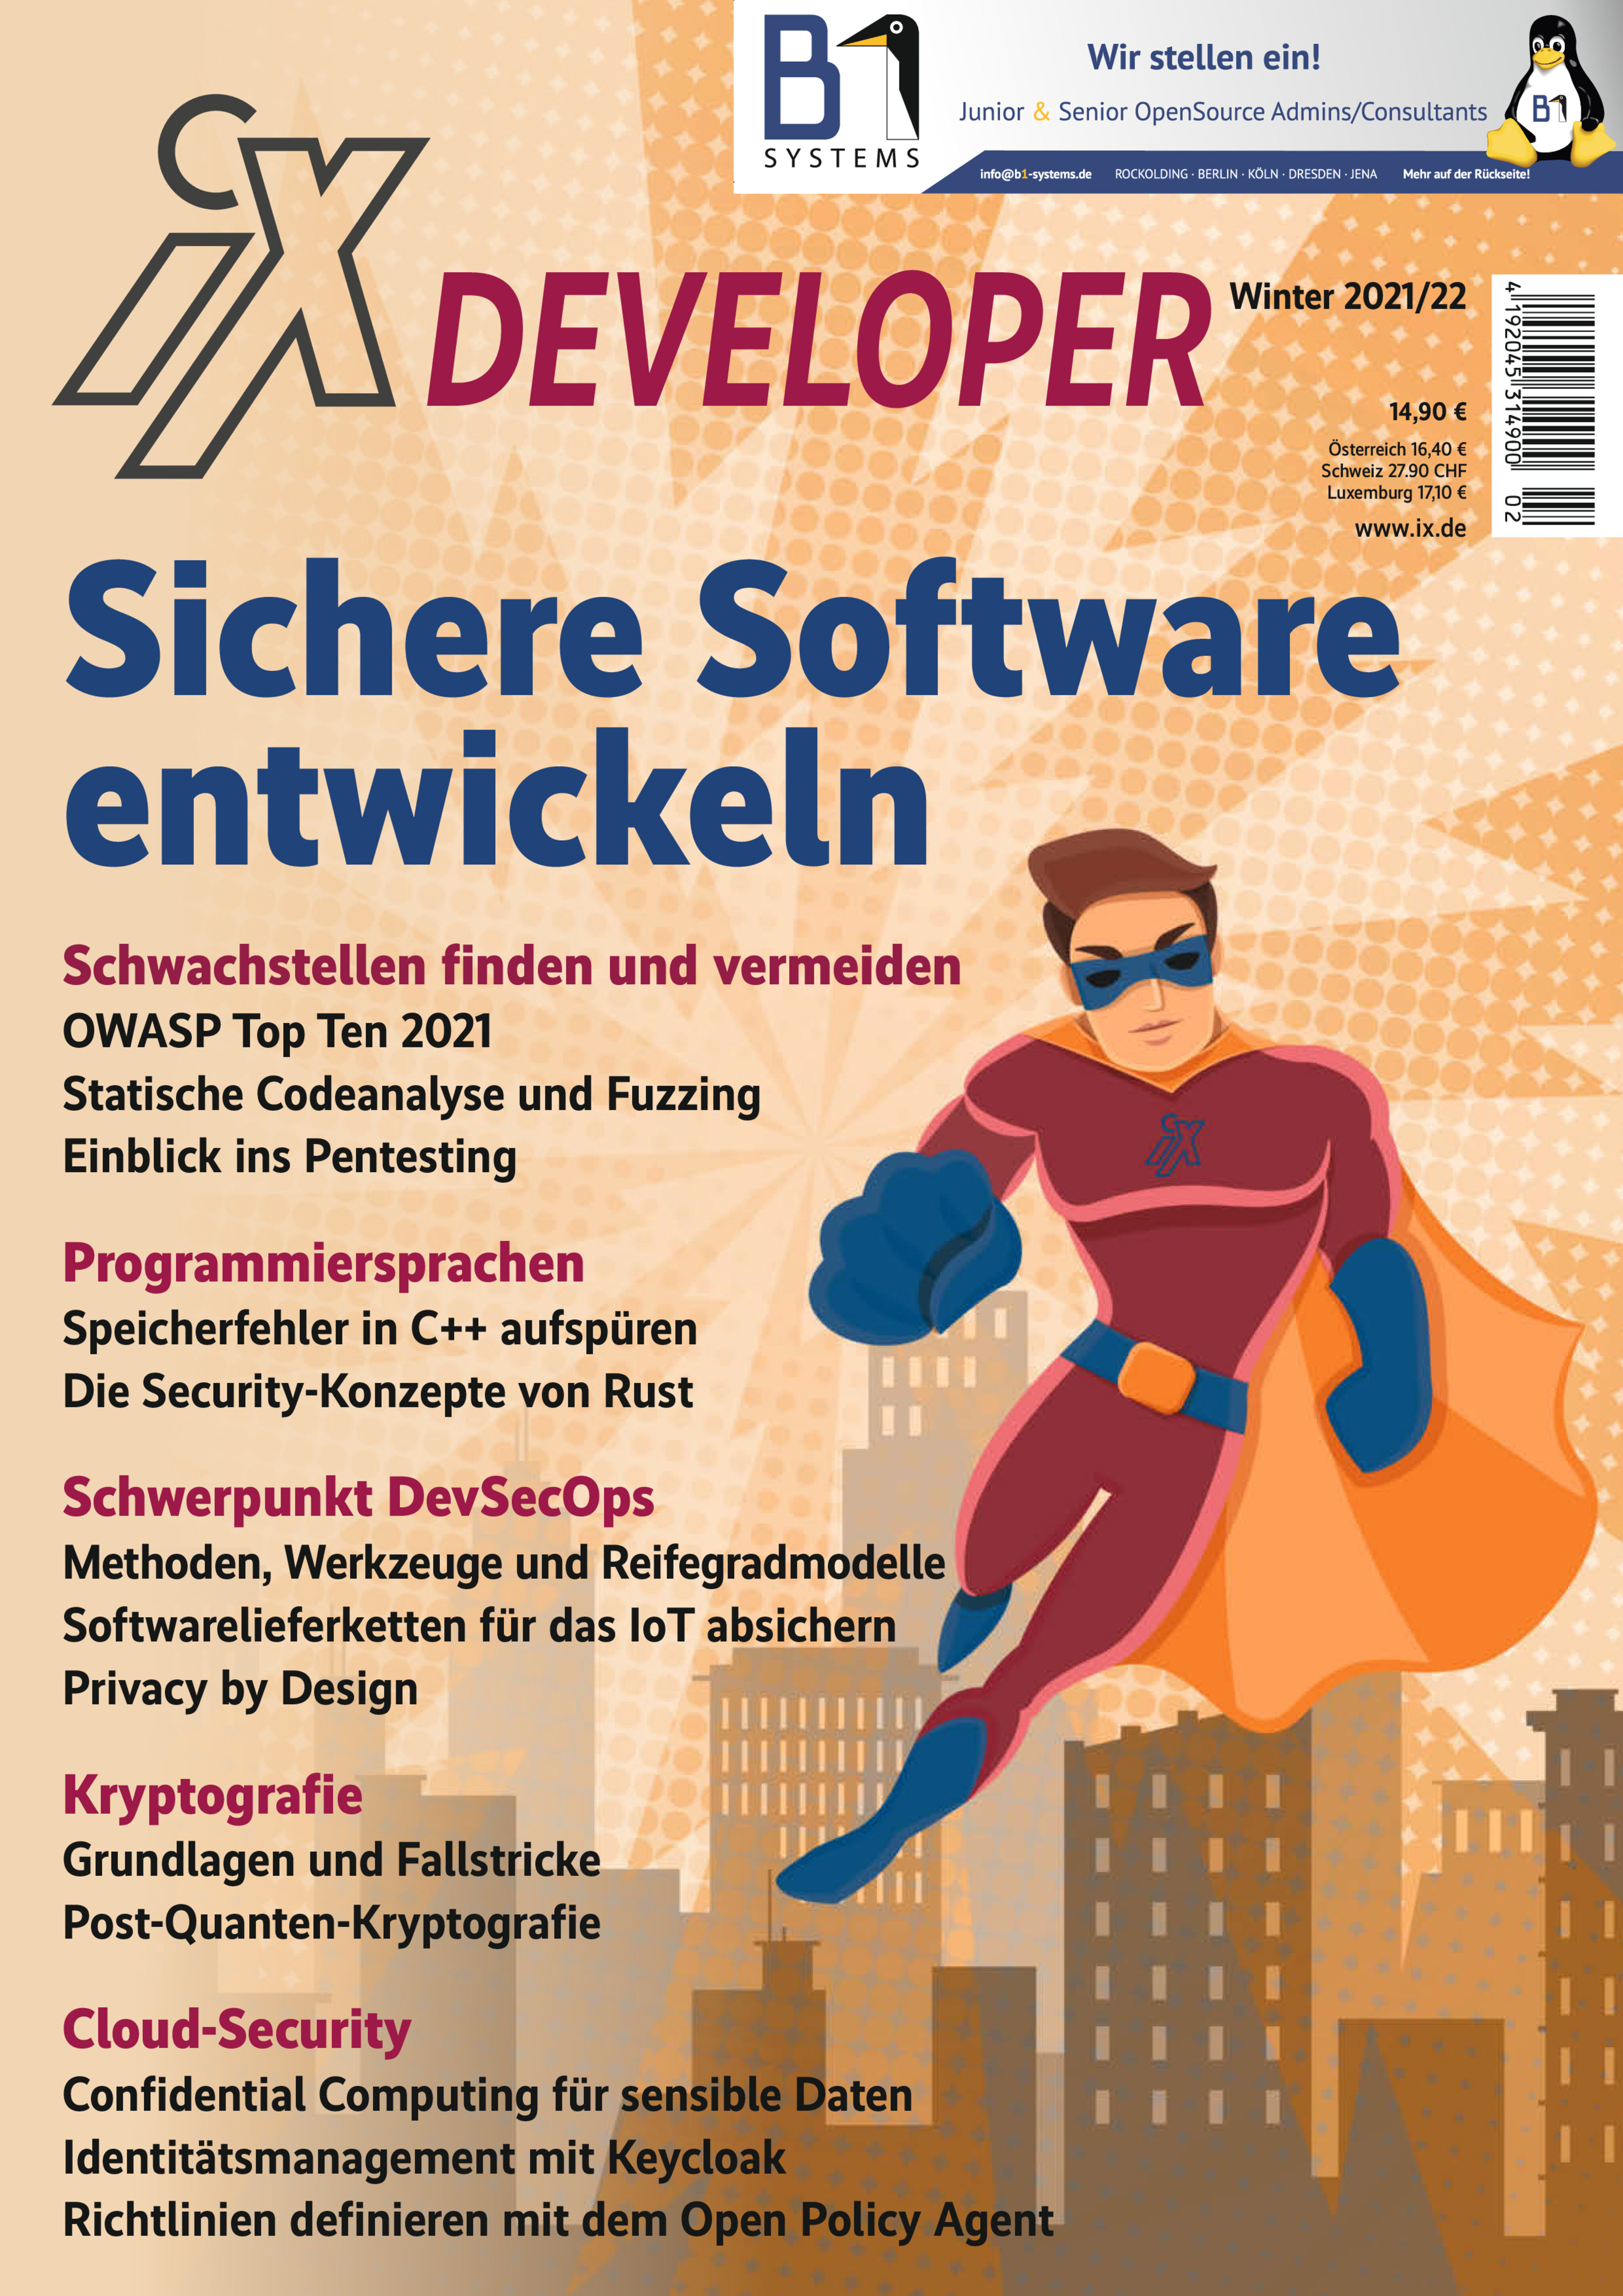 iX Developer Sichere Software entwickeln 2021/22